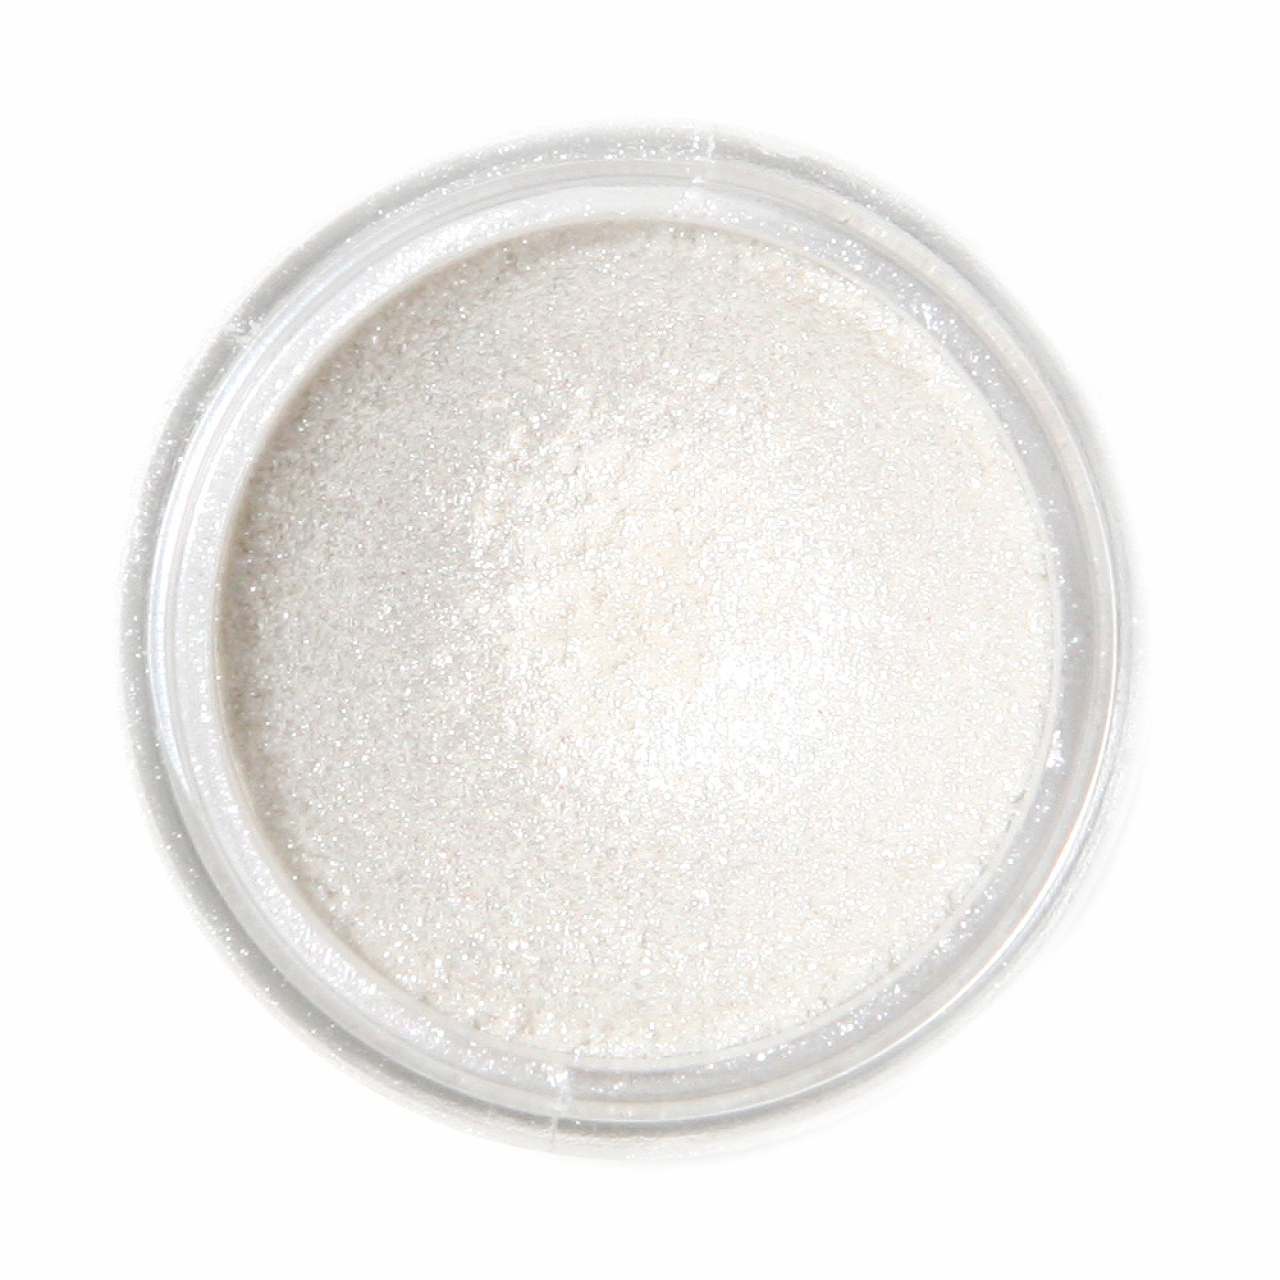 Fractal - SuPearl Ételdekorációs selyempor - Szikrázó Fehér ( Sparkling White )  - 3,5g